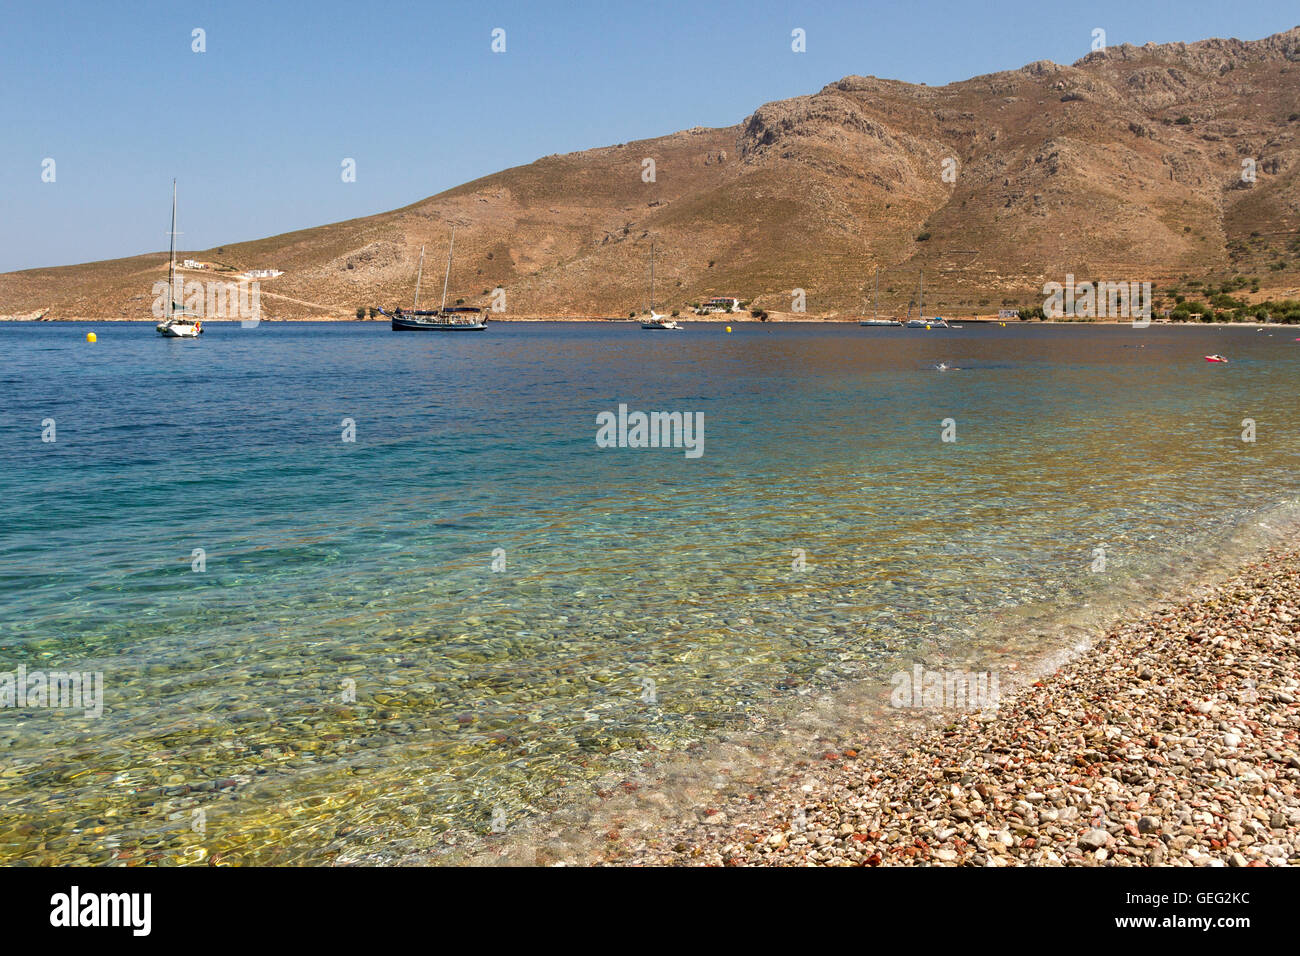 Der Strand von Livadia, Tilos (Telos) Insel, Dodekanes, Ägäis, Griechenland, Mittelmeer. Stockfoto